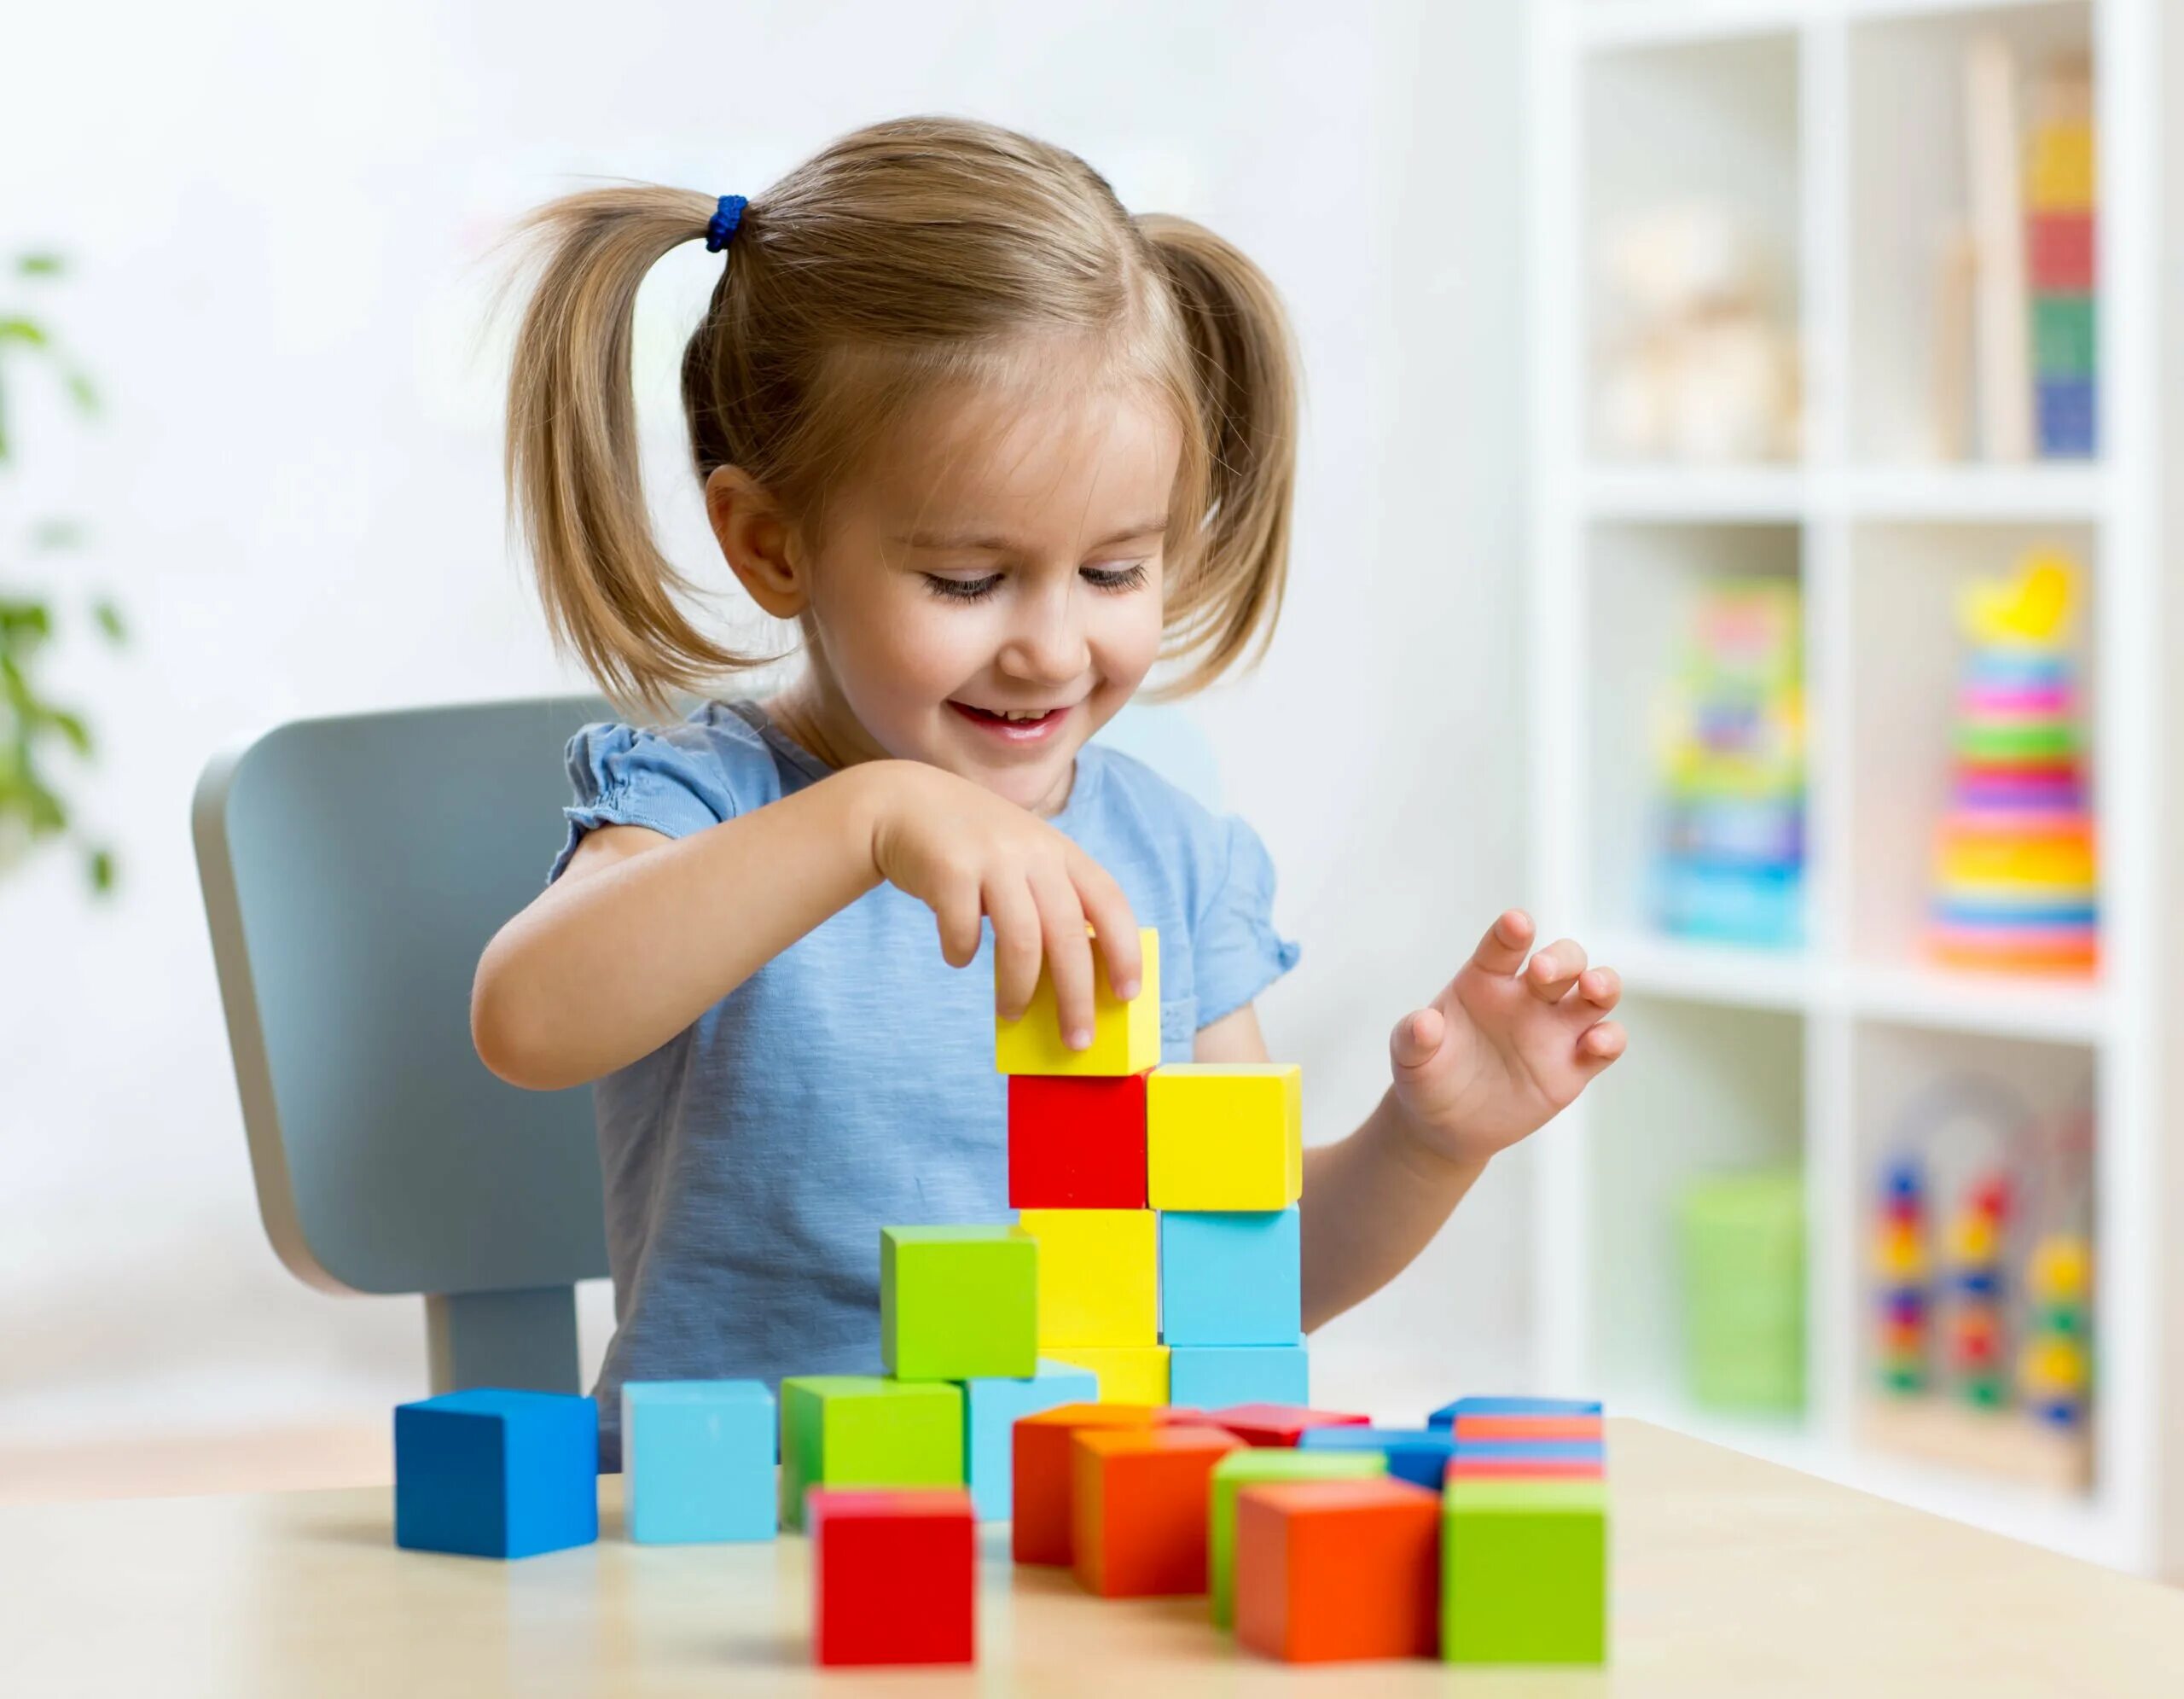 Кубики для детей. Играющий ребенок. Мышление детей. Ребенок собирает кубики. Развитие детей 3 х лет